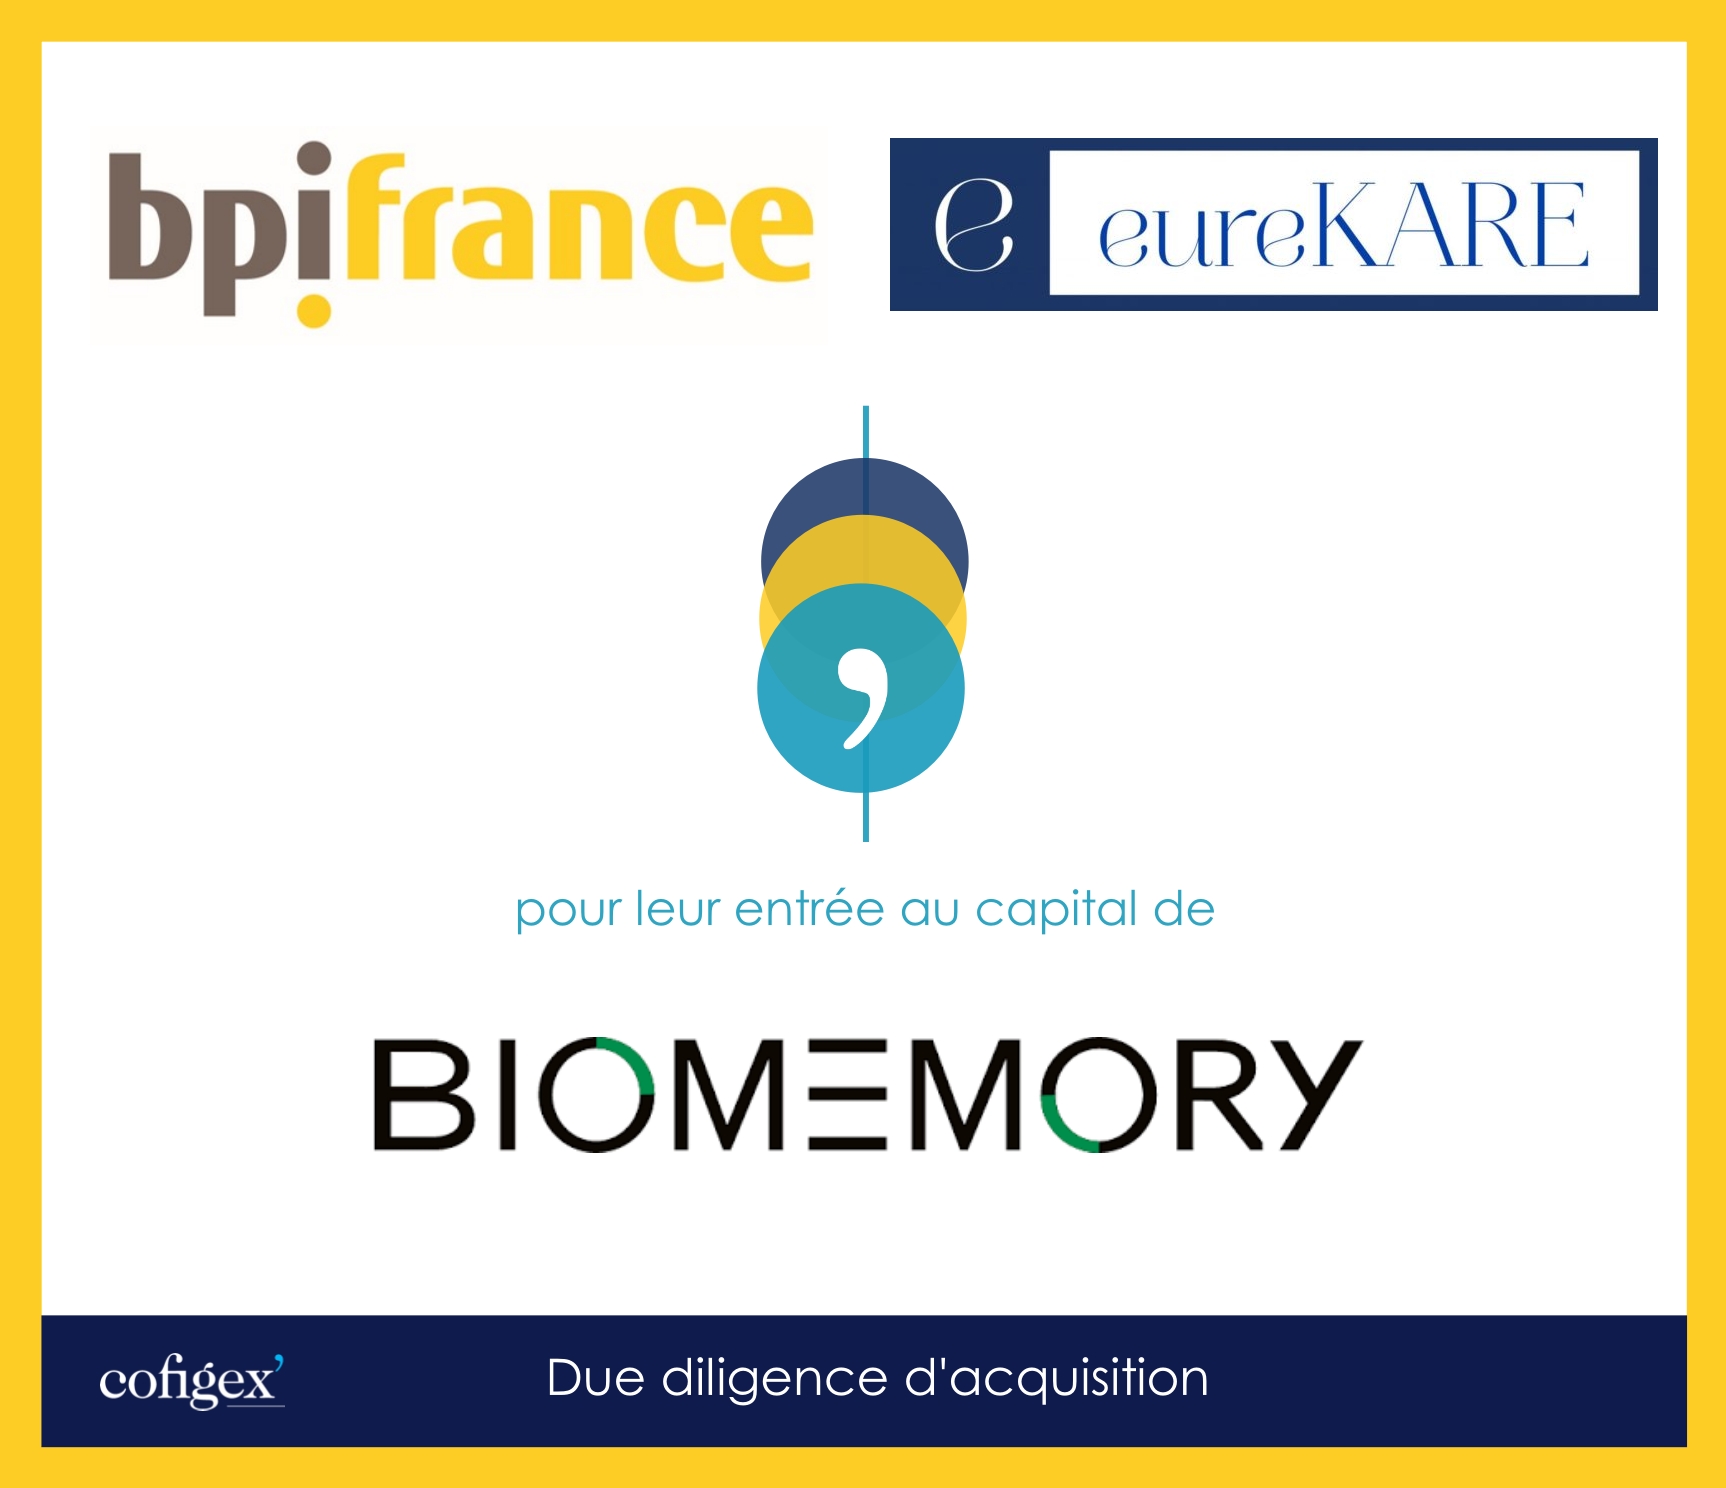 BPIFRANCE & EUREKARE - BIOMEMORY